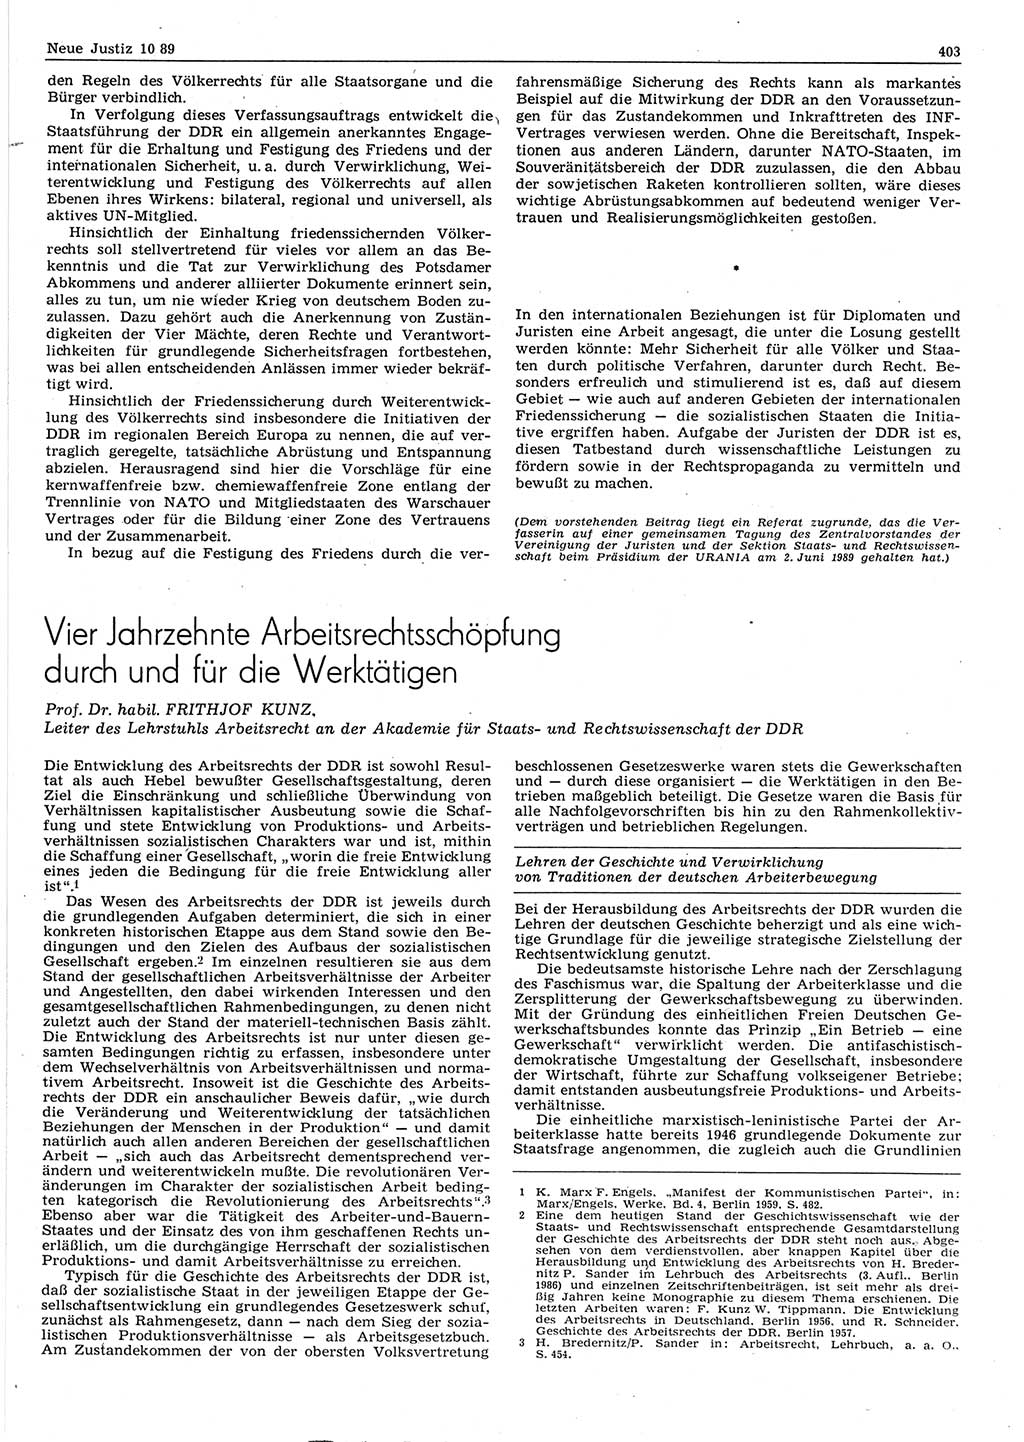 Neue Justiz (NJ), Zeitschrift für sozialistisches Recht und Gesetzlichkeit [Deutsche Demokratische Republik (DDR)], 43. Jahrgang 1989, Seite 403 (NJ DDR 1989, S. 403)